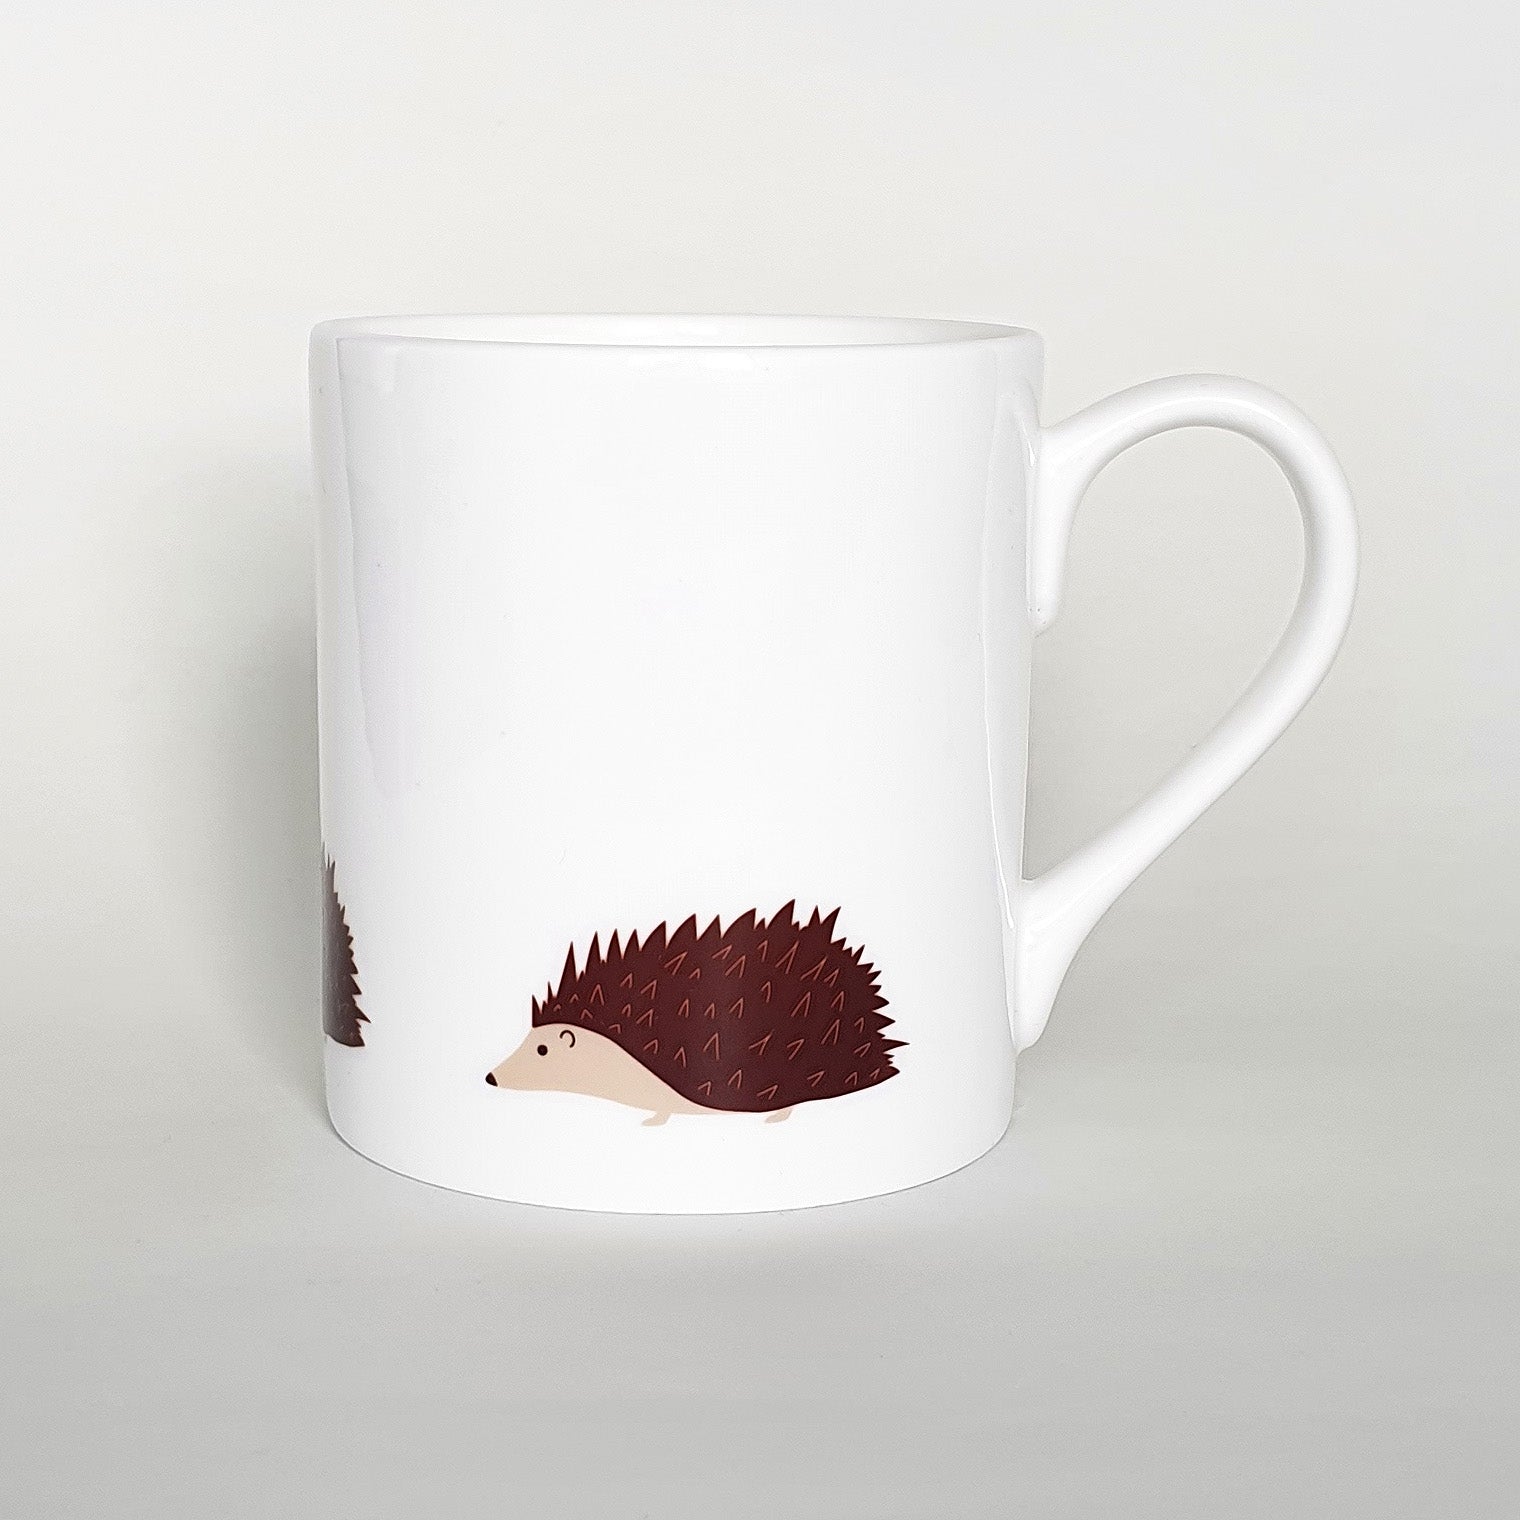 Hedgehog bone china mug